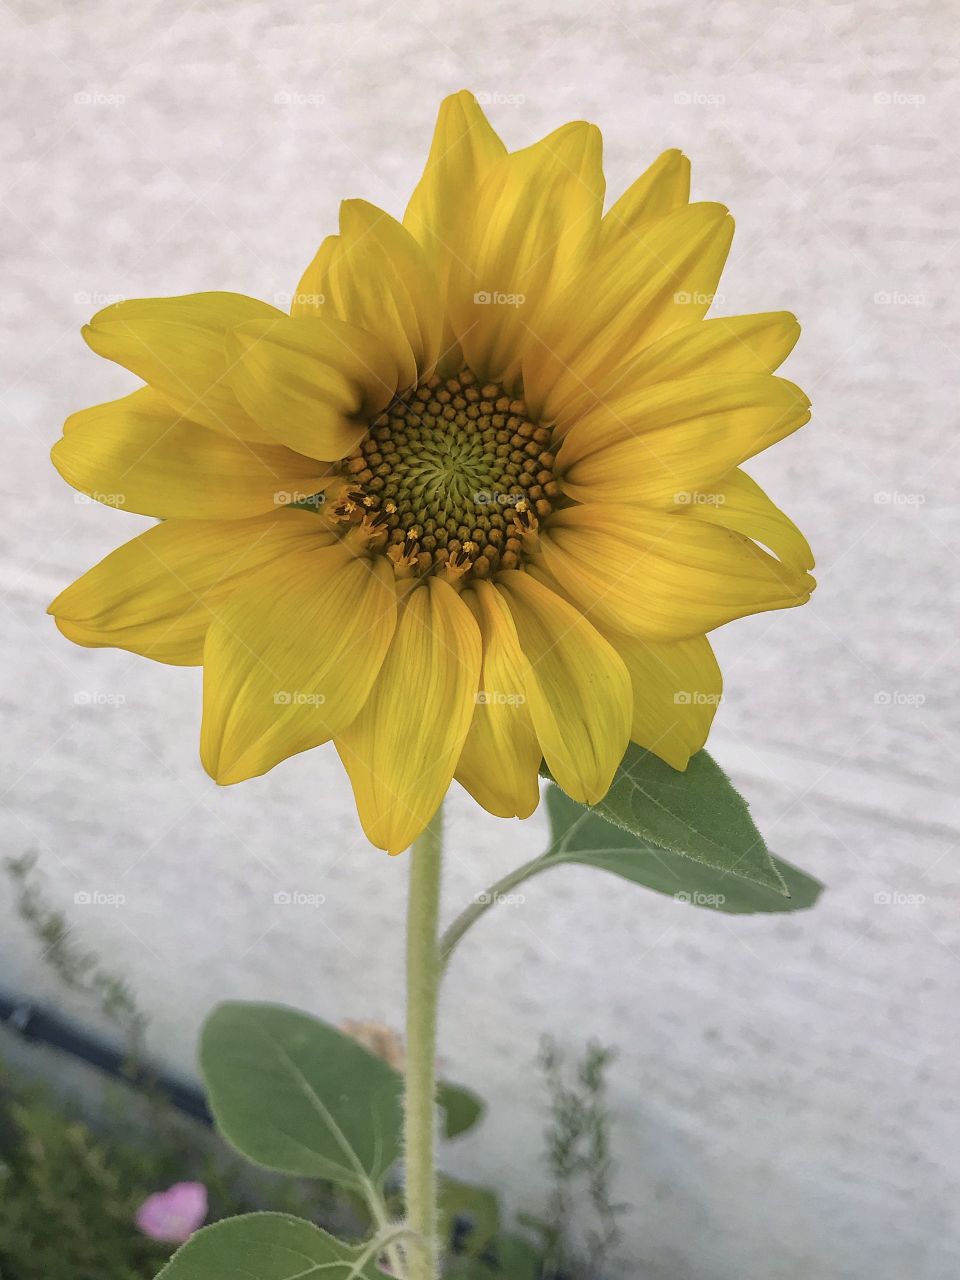 Little sunflower 🌻